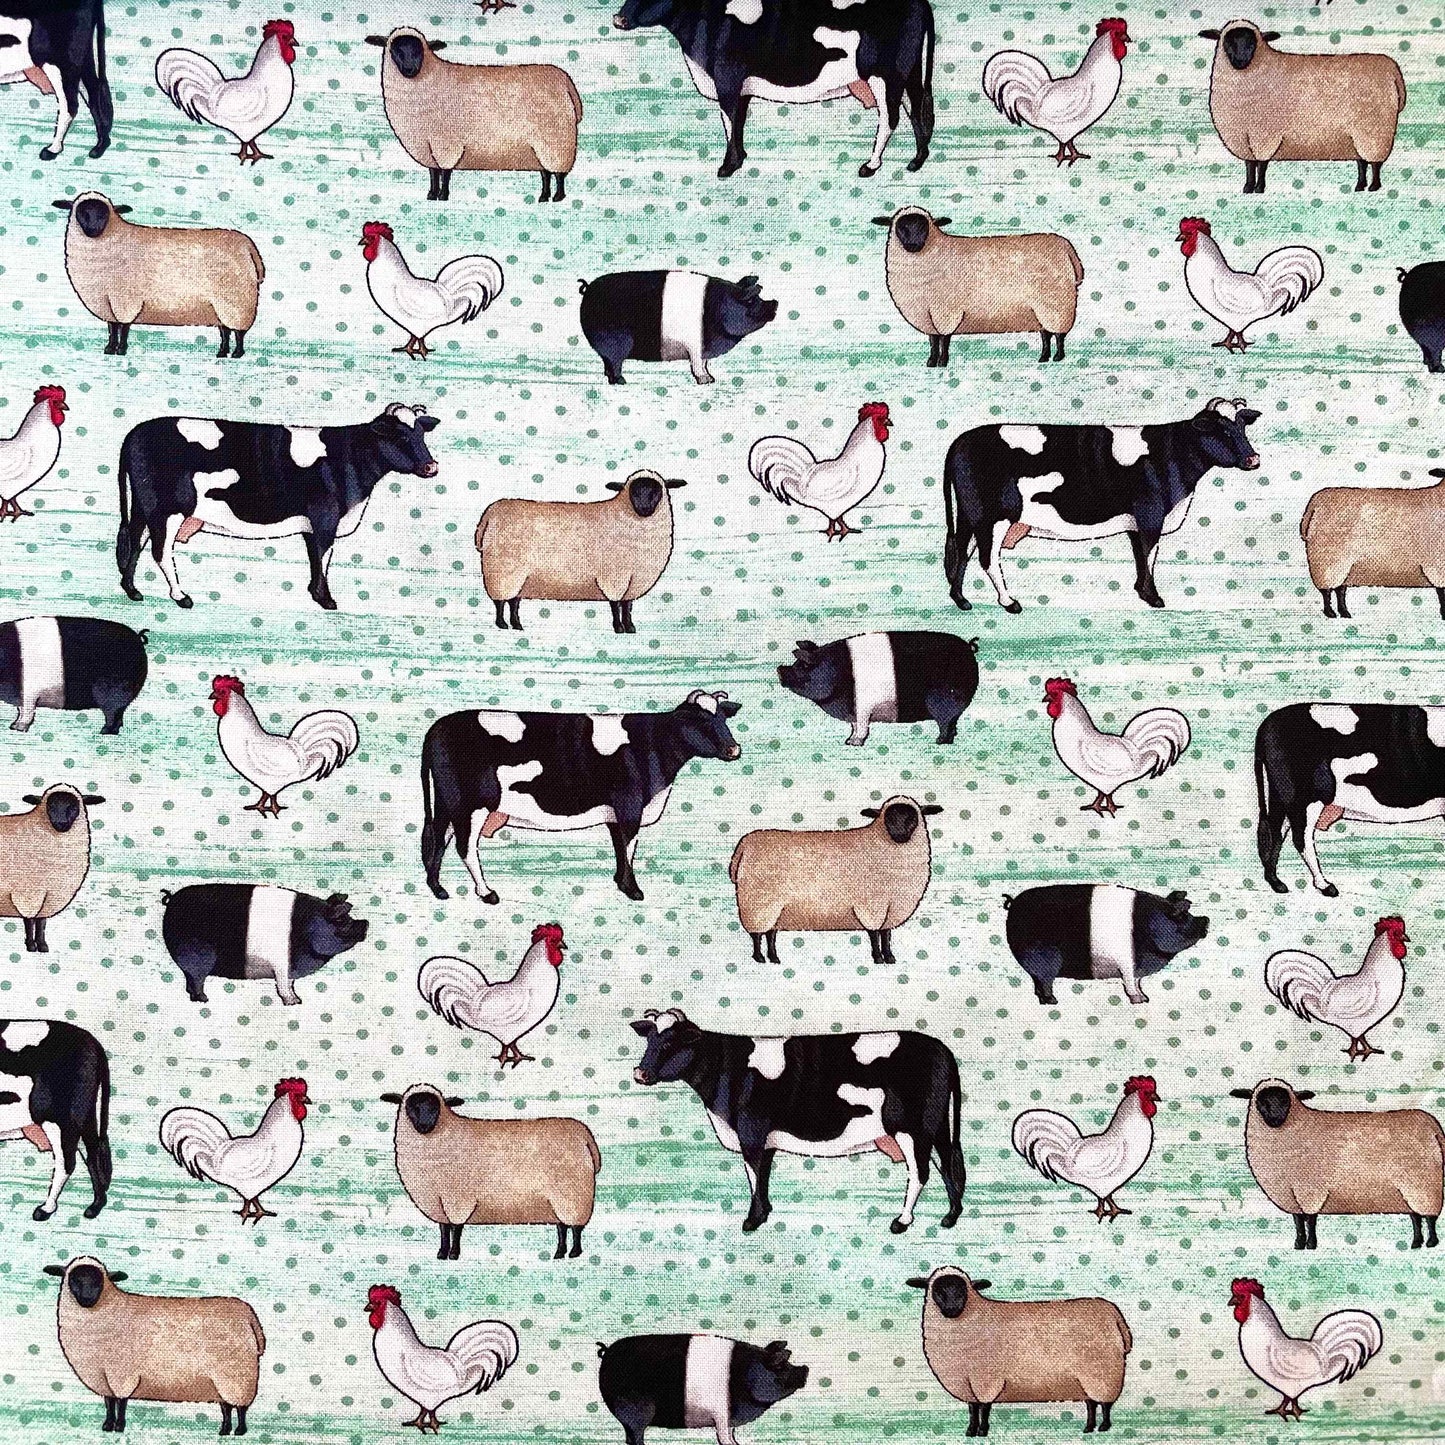 Fabric By The Yard - Farm Animals Lt Mint - Benartex -13246-04 - Spring Hill Farms